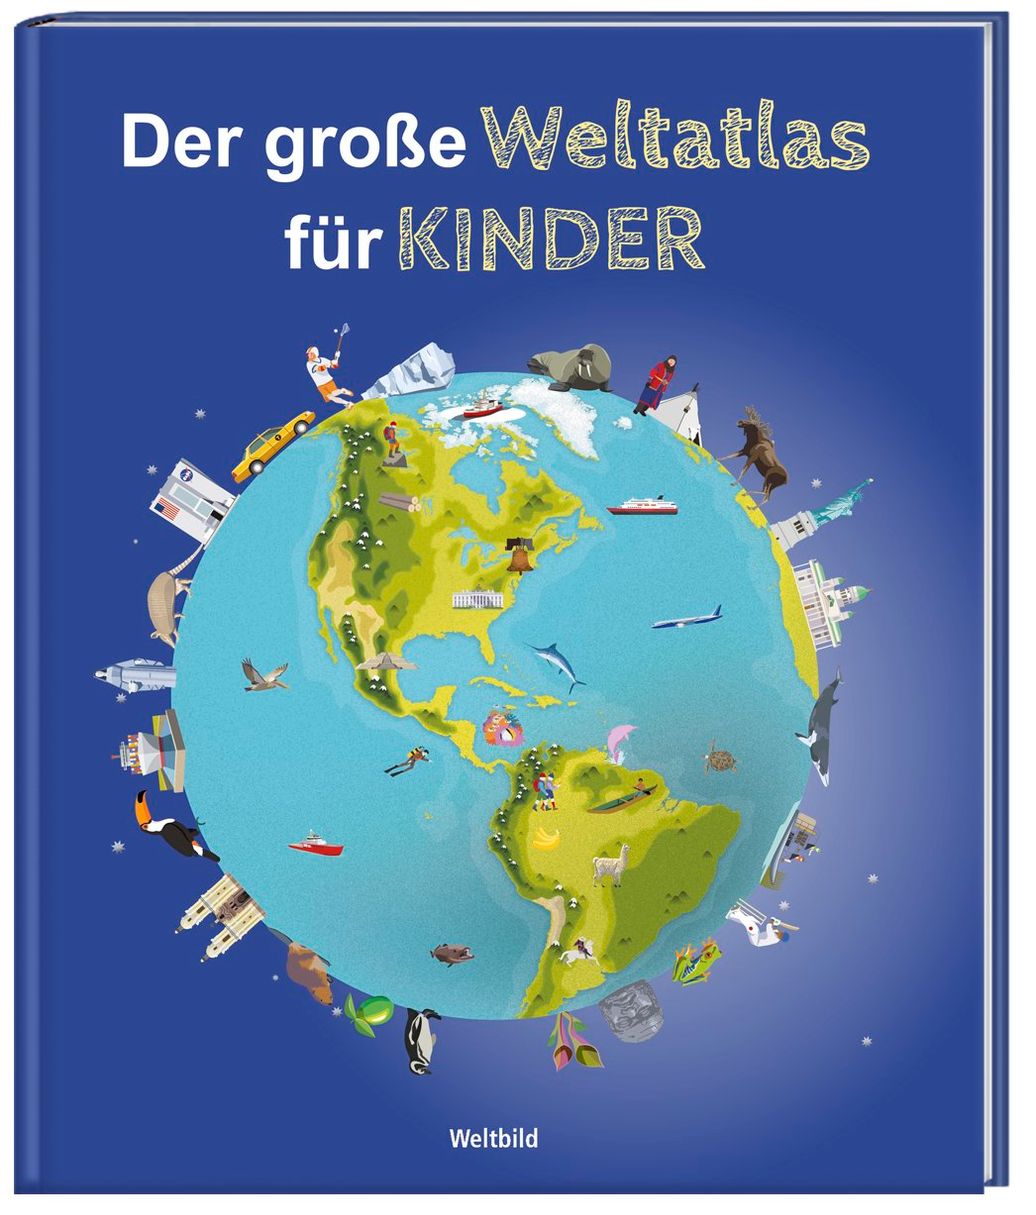 Der grosse Weltatlas für Kinder Buch: Weltbild-Ausgabe jetzt kaufen